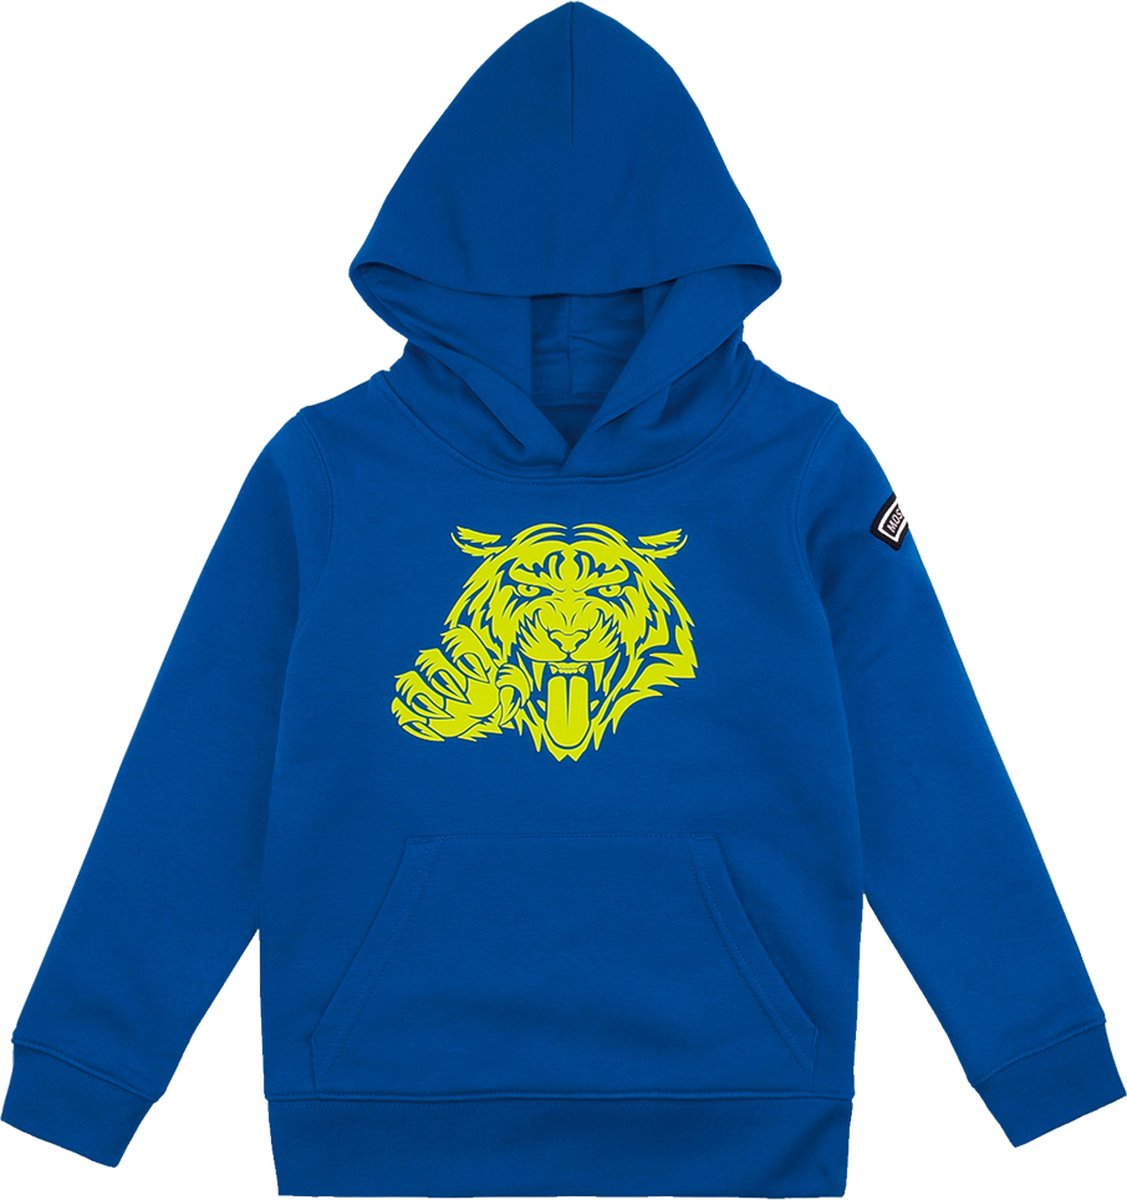 Most Hunted - kinder hoodie - tijger - blauw - fluor geel - maat 98/104